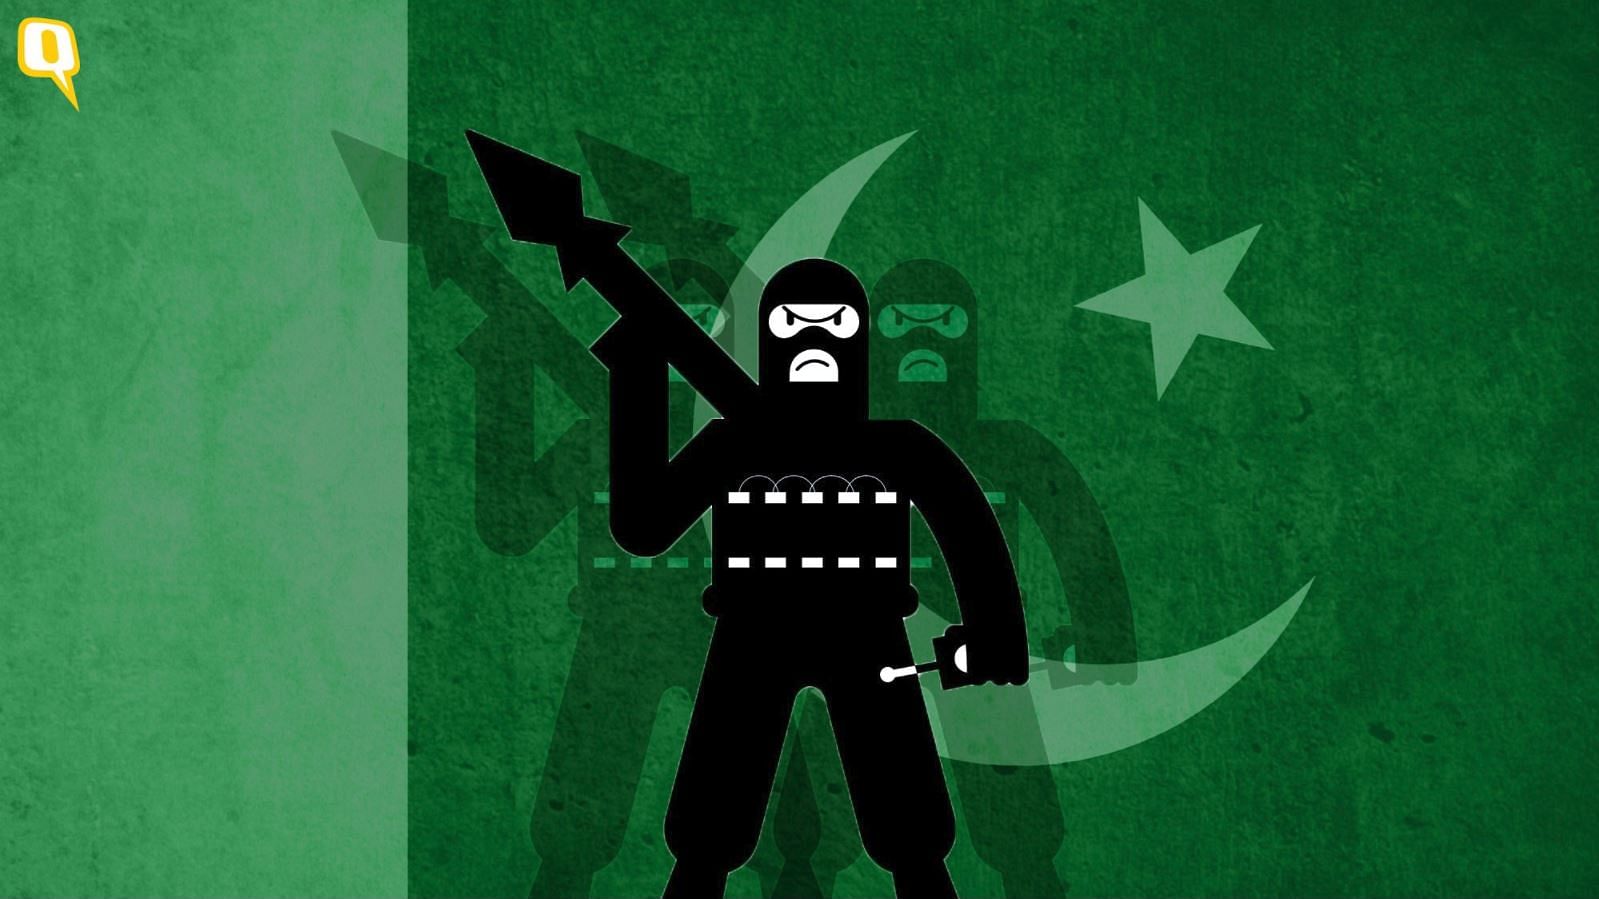 अमेरिका के मुताबिक पाकिस्तान आतंकवाद को रोकने में पर्याप्त कोशिश नहीं कर रहा है